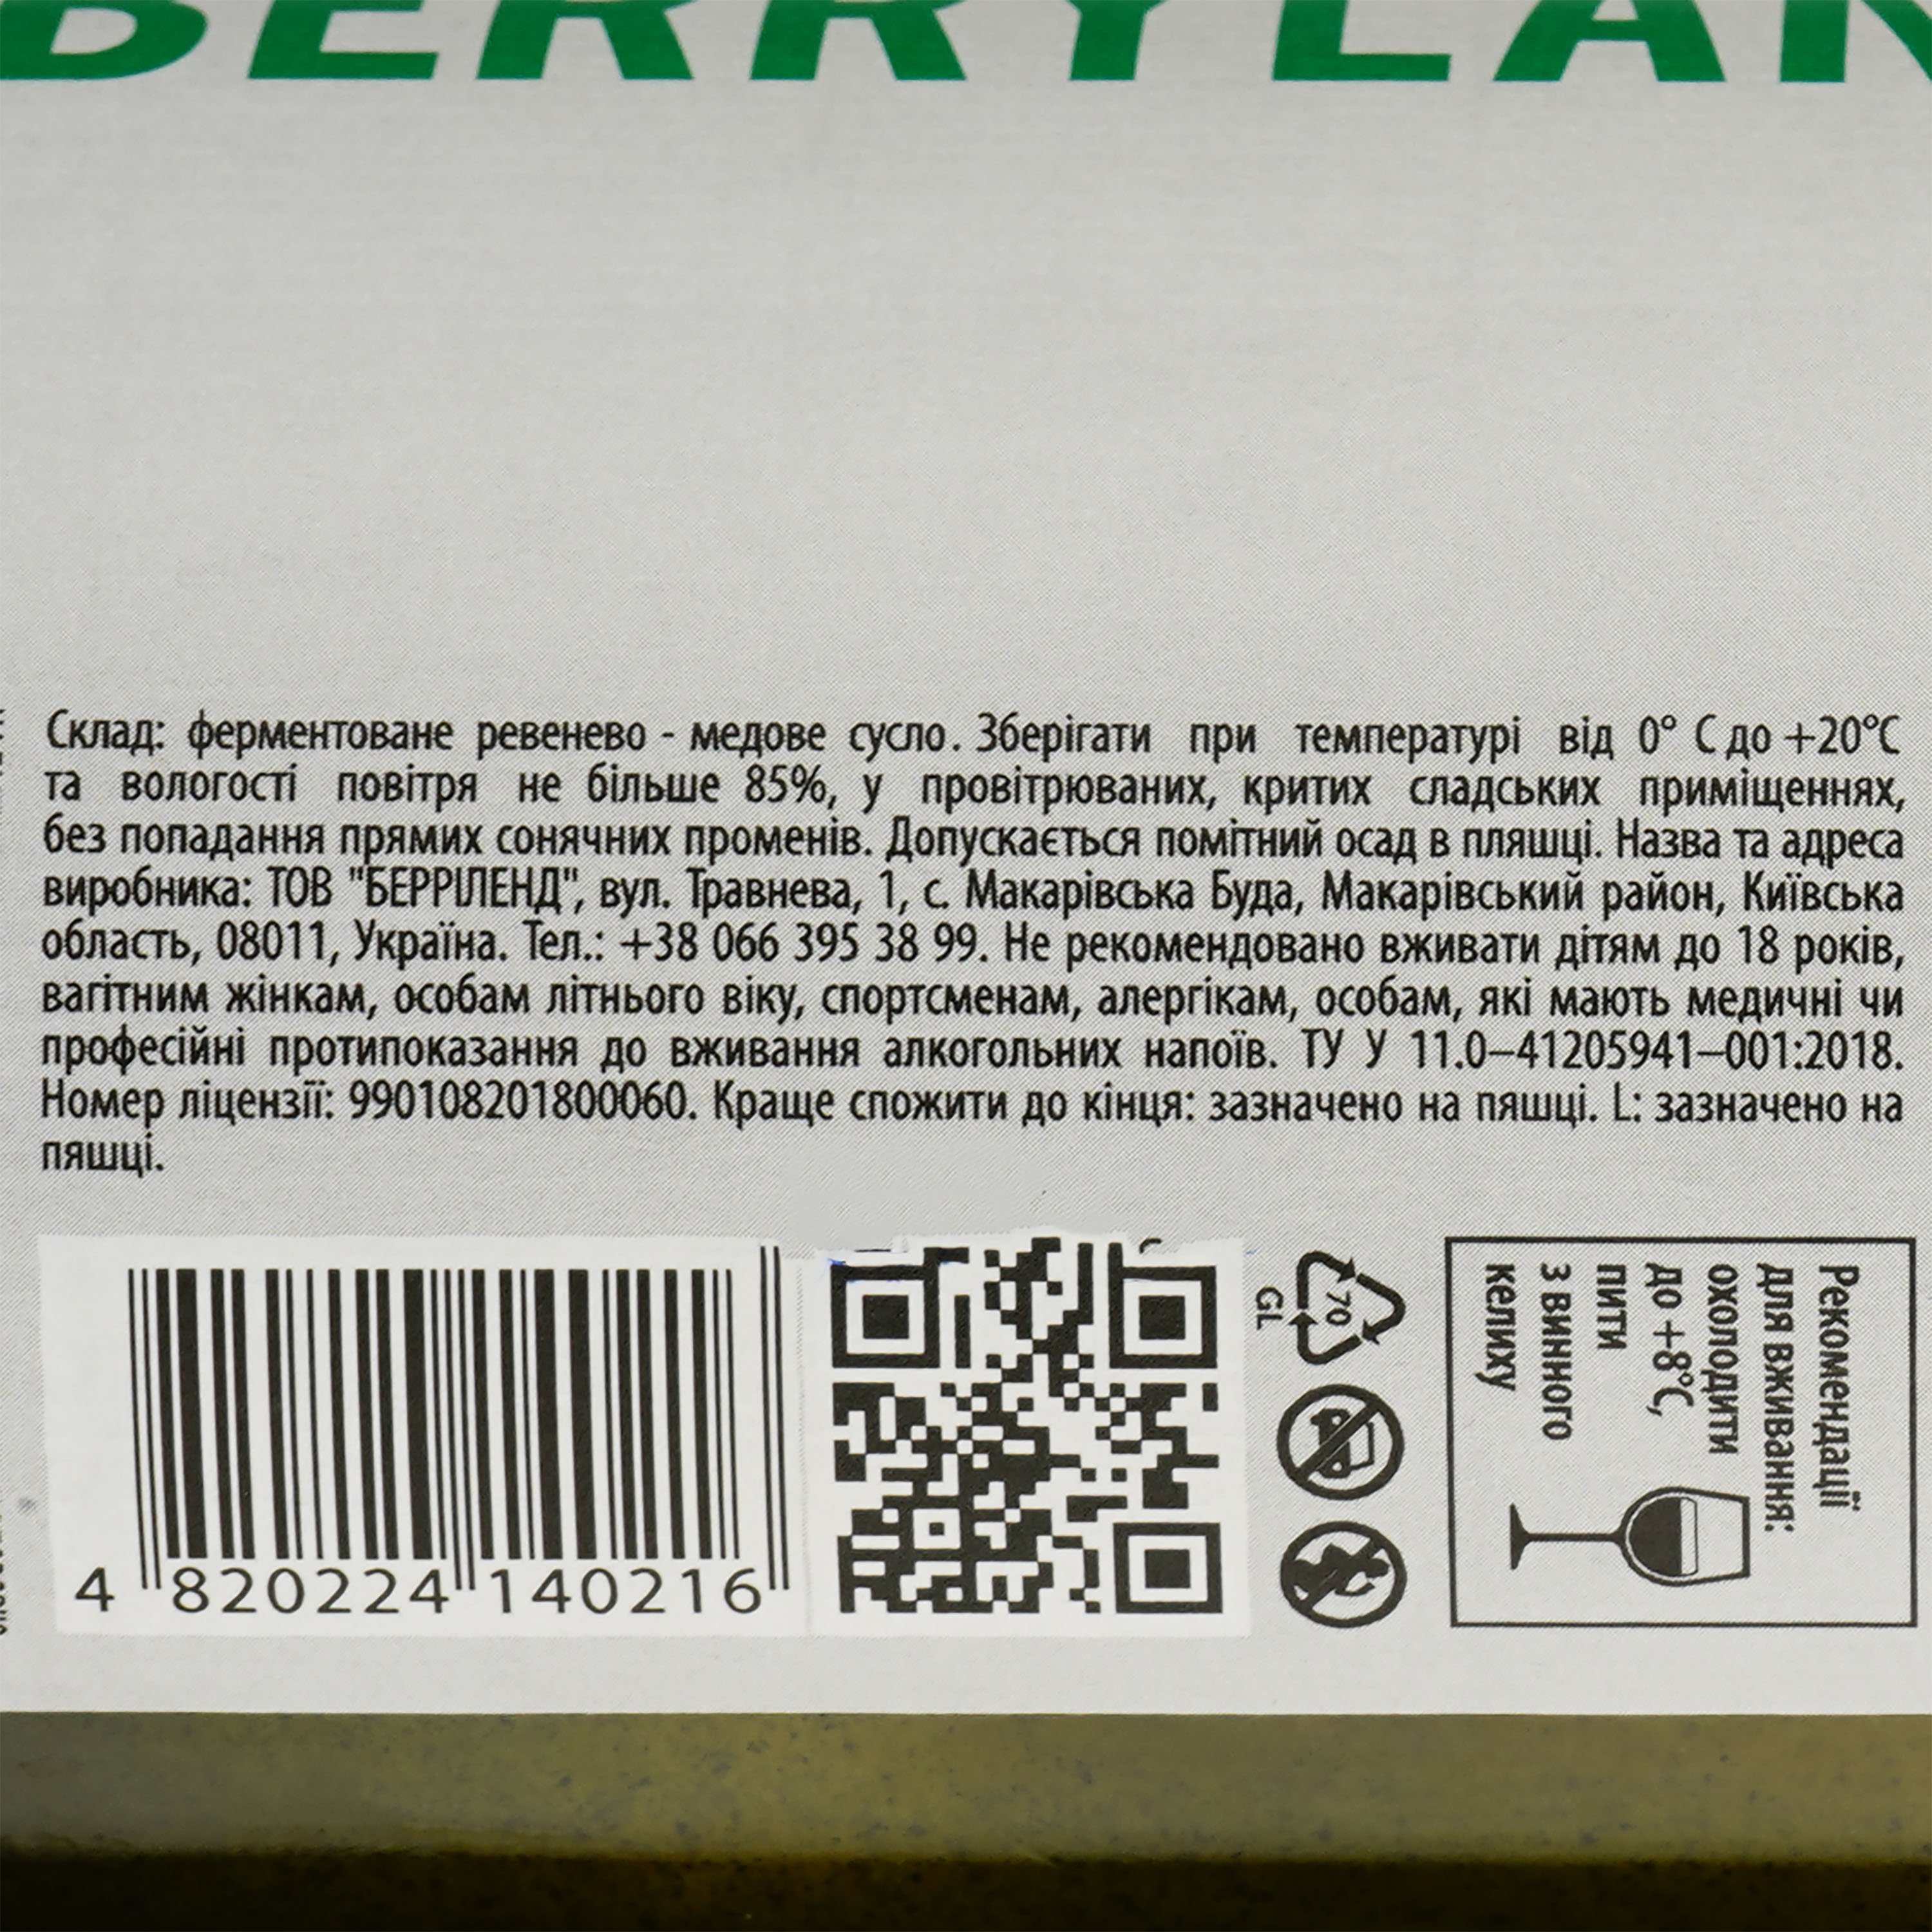 Питьевой мед Berryland Rhubarb Dry, 7-7,5%, 0,75 л (815515) - фото 3